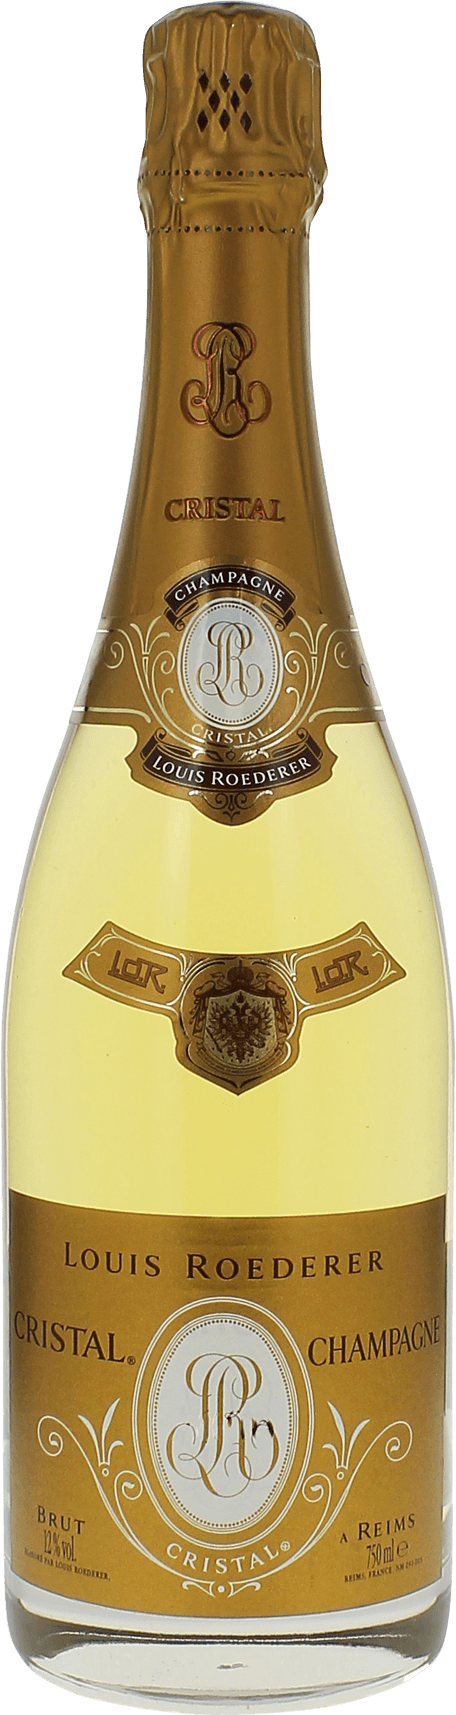 Cristal roederer 2004  Roederer, Champagne